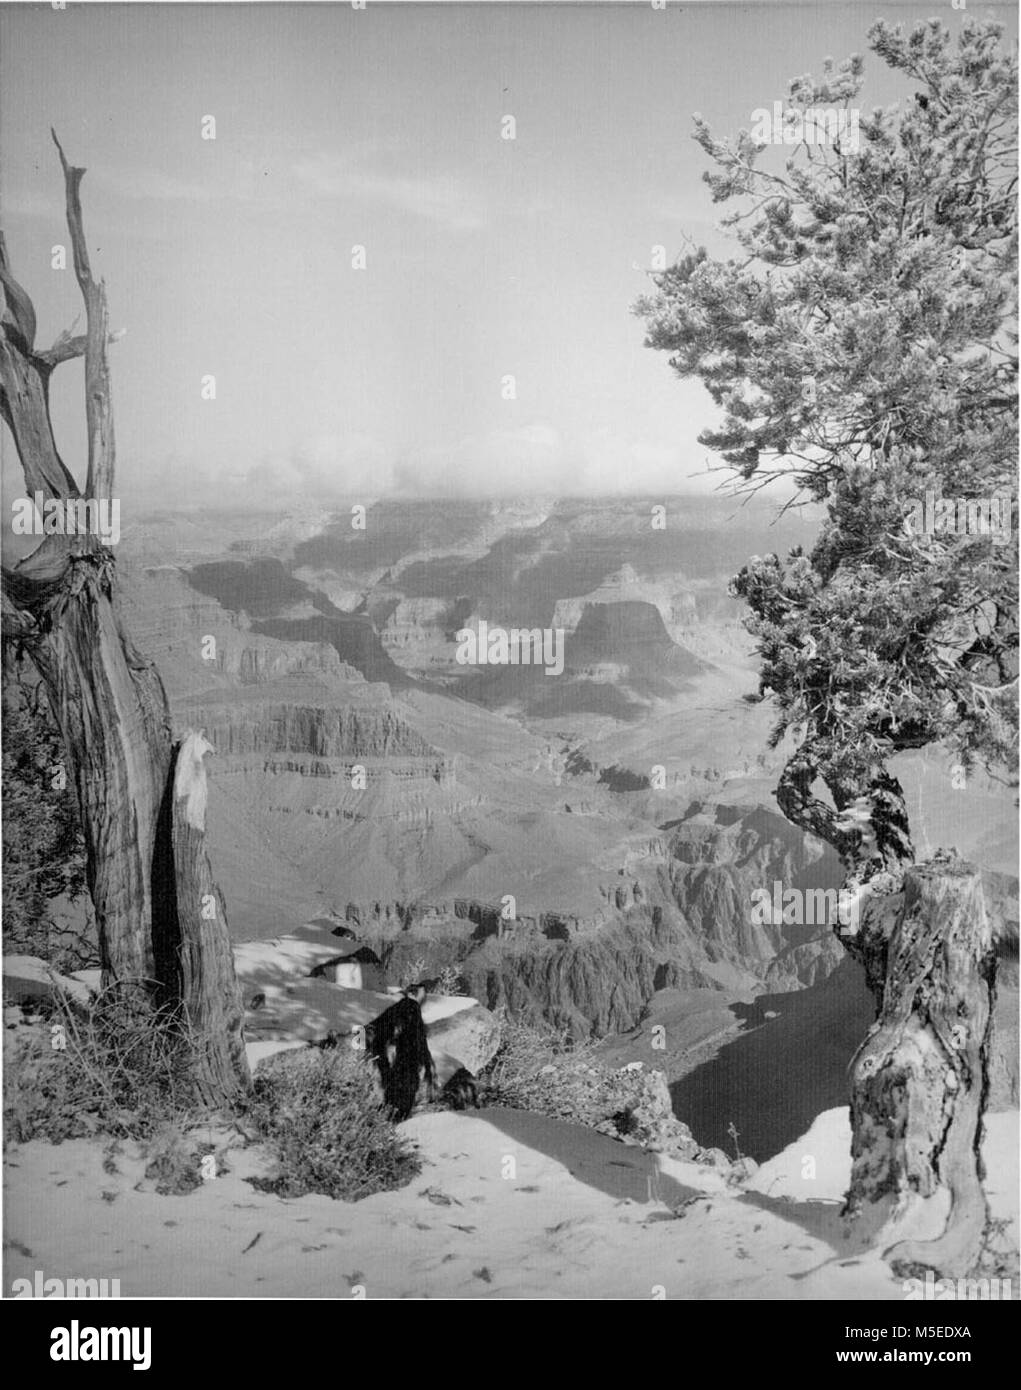 Grand Canyon Punto Hopi escena de nieve, el Borde Sur del Gran Cañón, desde RIM CORTA DISTANCIA AL ESTE DEL PUNTO Hopi. CIRCA 1953. Foto de stock